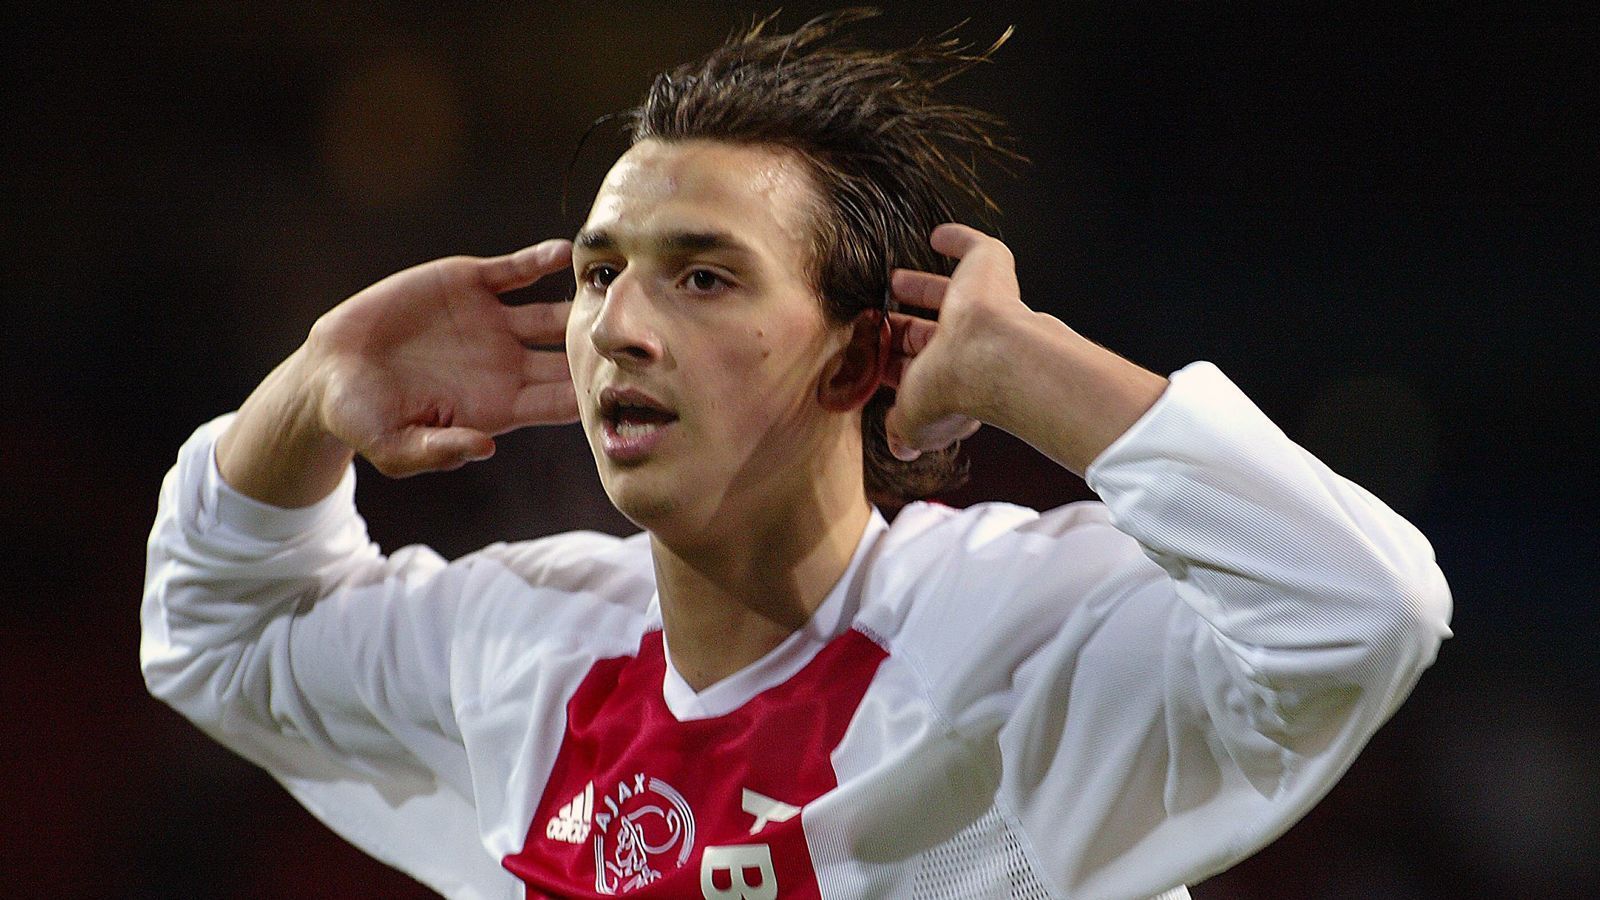 
                <strong>Angriff - Zlatan Ibrahimovic</strong><br>
                Als der Schwede 2001 mit 19 Jahren von Malmö nach Amsterdam kam, war er ein ungeschliffener Diamant, der bei Ajax zum Funkeln gebracht wurde. Sieben Millionen Ablöse sollen die Niederländer für den Stürmer gezahlt haben und müssen sich wohl sicher gewesen sein, dass er zum Star wird. Denn trotz diverser Streits mit seinen Trainern, hielt der Klub immer an ihm fest. In 74 Spielen erzielte der Exzentriker immerhin 35 Tore. Kein Wunder, dass 2004 Juventus Turin auf ihn aufmerksam wurde und für einen Wechsel wohl 16 Millionen Euro auf den Tisch legte. Es folgten Stationen wie Inter Mailand, Barcelona, AC Milan, Paris Manchester United und aktuell LA Galaxy. Sein Karriereende plant der 36-Jährige aber offenbar in der Heimat - bei Ibras Jugendklub Malmö FF.
              